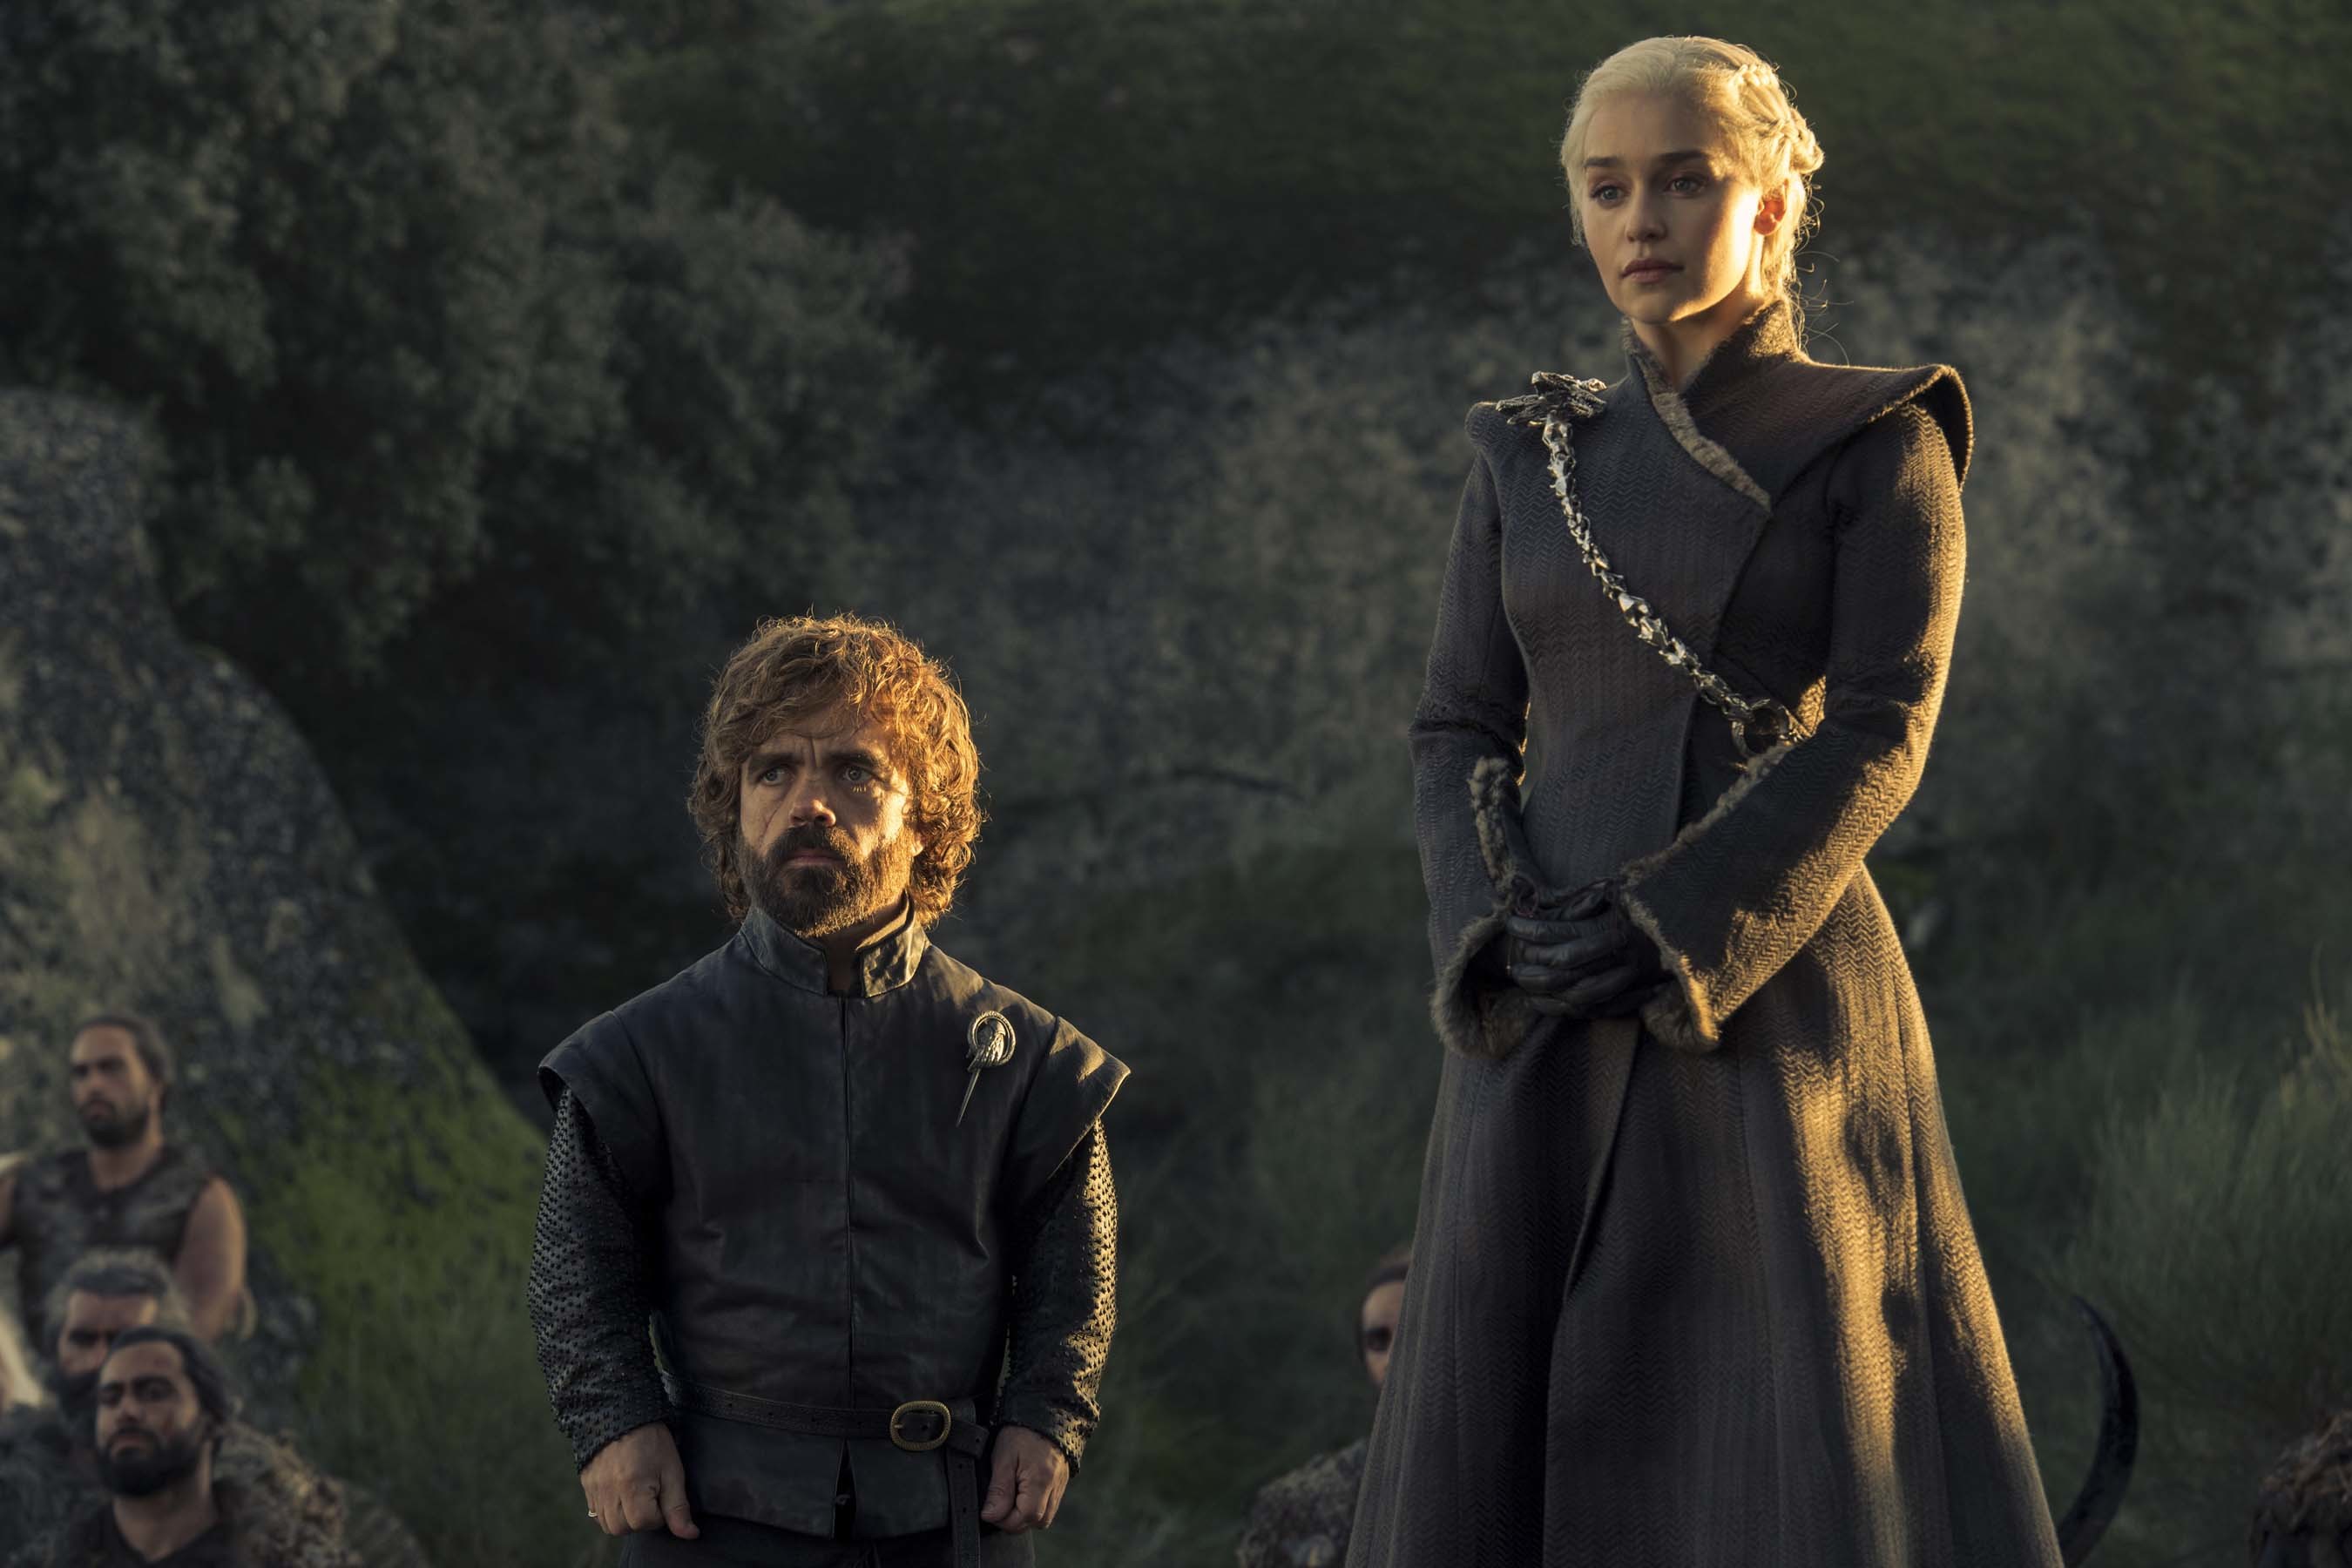 2700x1800 Game of Thrones season 7 episode 5 Daenerys Targaryen Wallpaper HBO